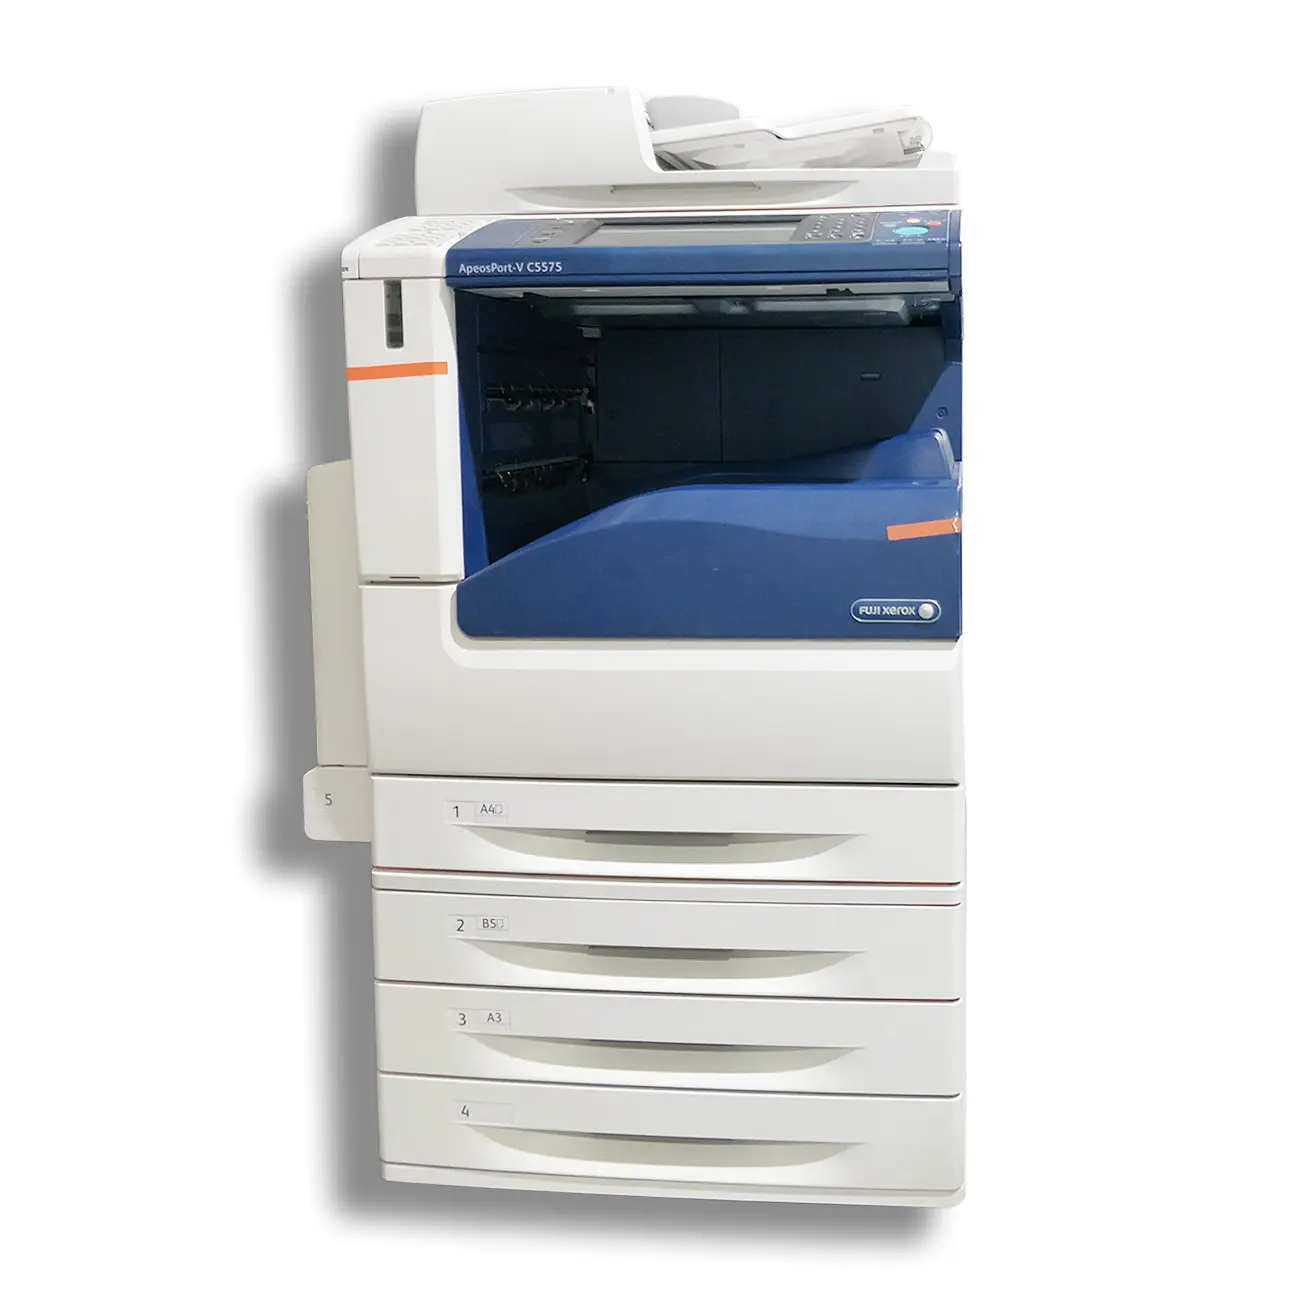 Aparelhos eletrônicos, impressora e máquina de fotocópia removedor fotocopiadora de cores para xerox v c5575